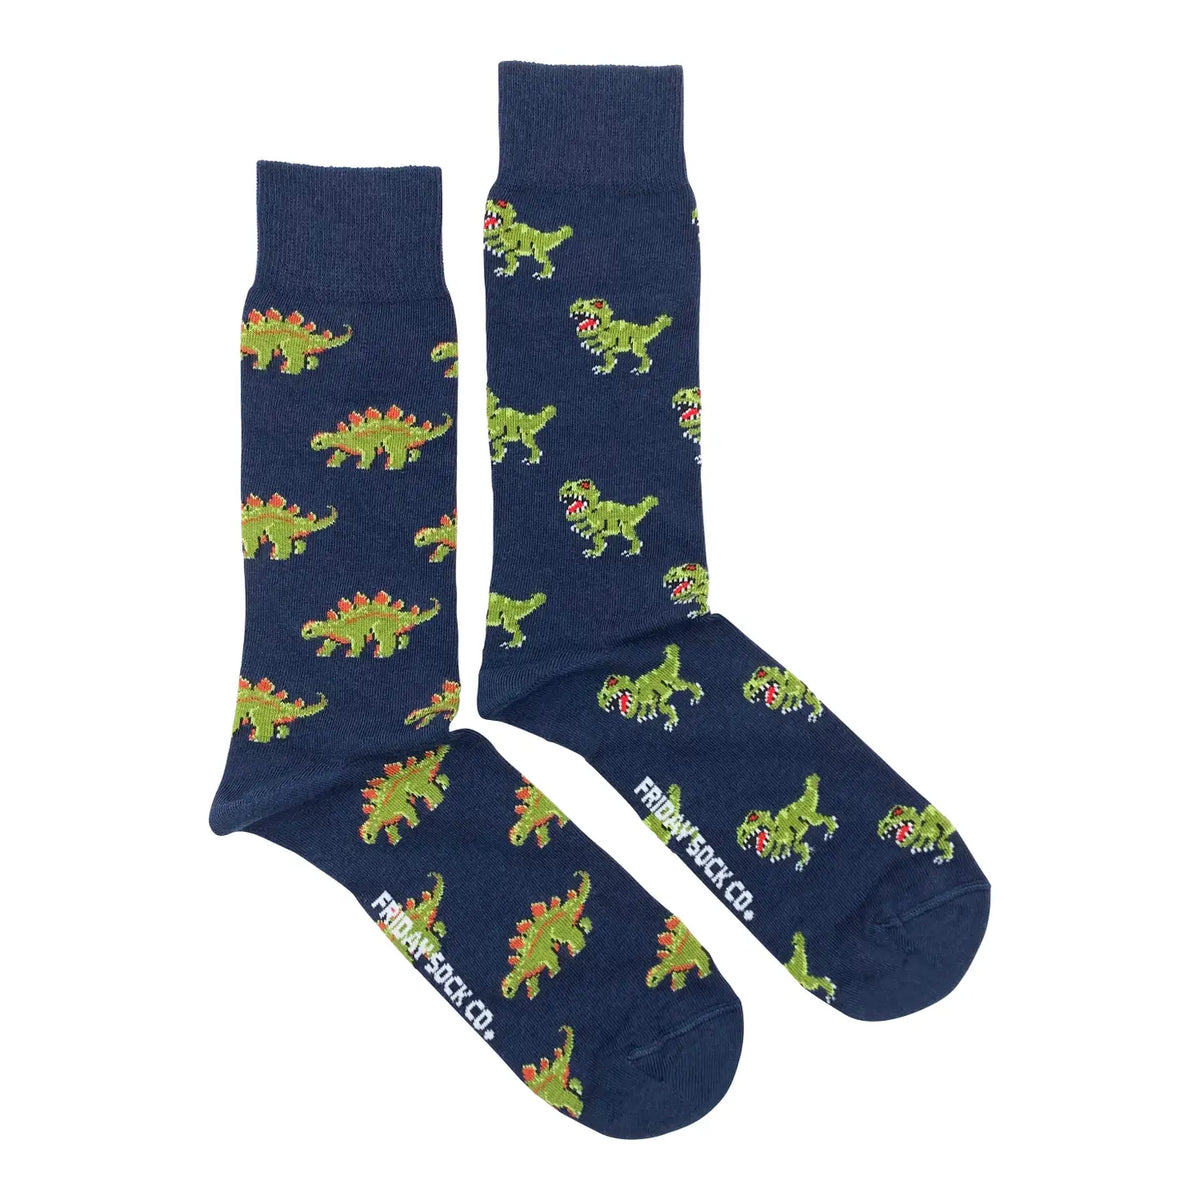 Friday Sock Co. - Men's Socks Green Dinosaurs